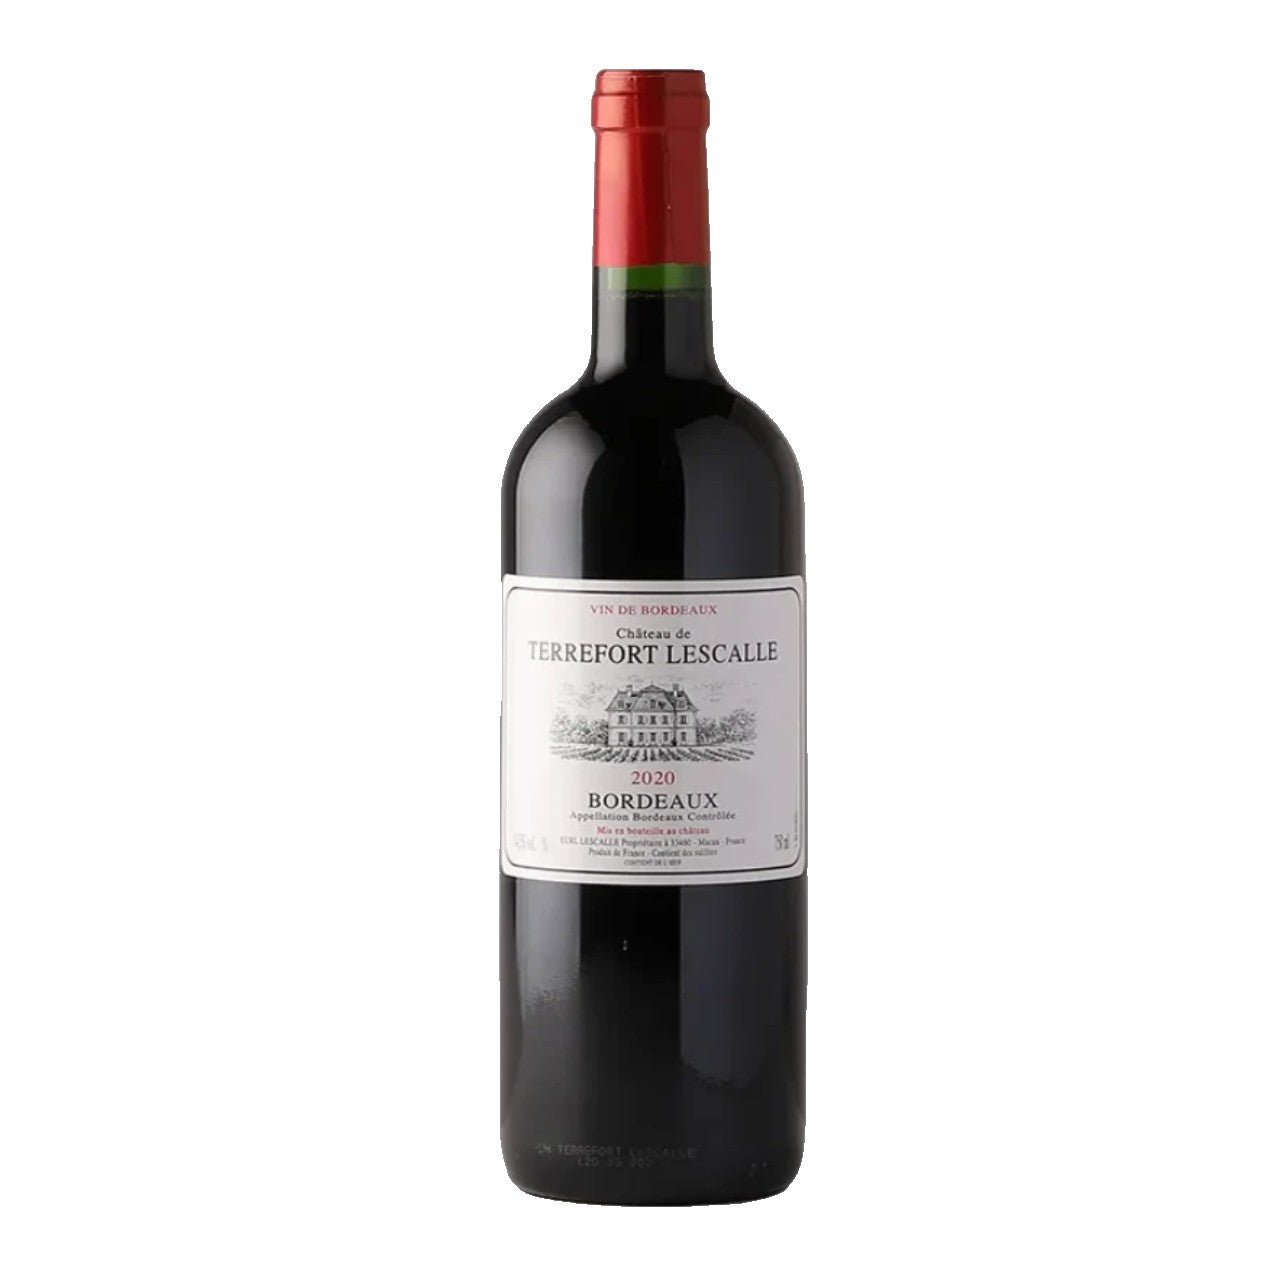 Château de Terrefort Lescalle Bordeaux 2020 - Wine France Red - Liquor Wine Cave